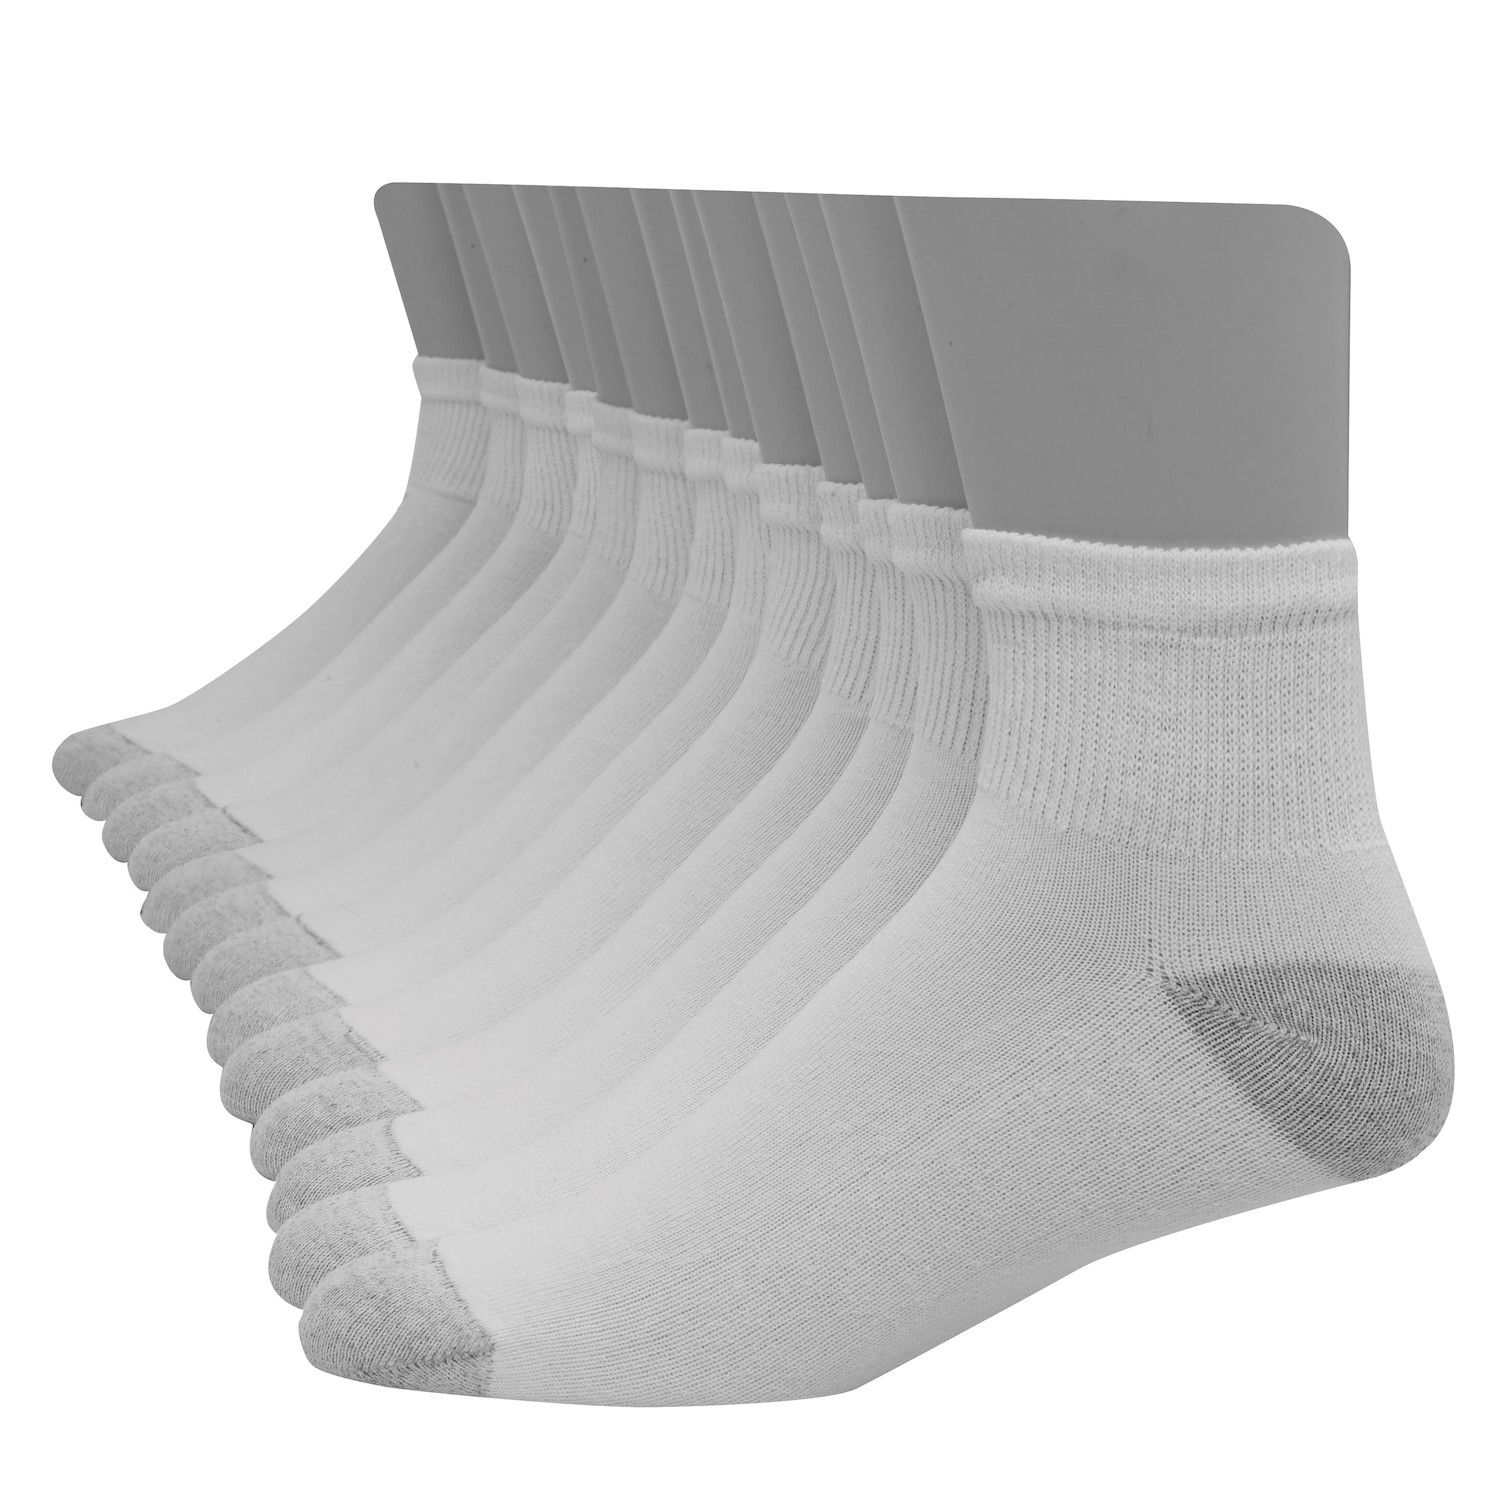 Image for Hanes Men's Ultimate 12-pack + 1 Bonus Soft & Durable Ankle Socks at Kohl's.